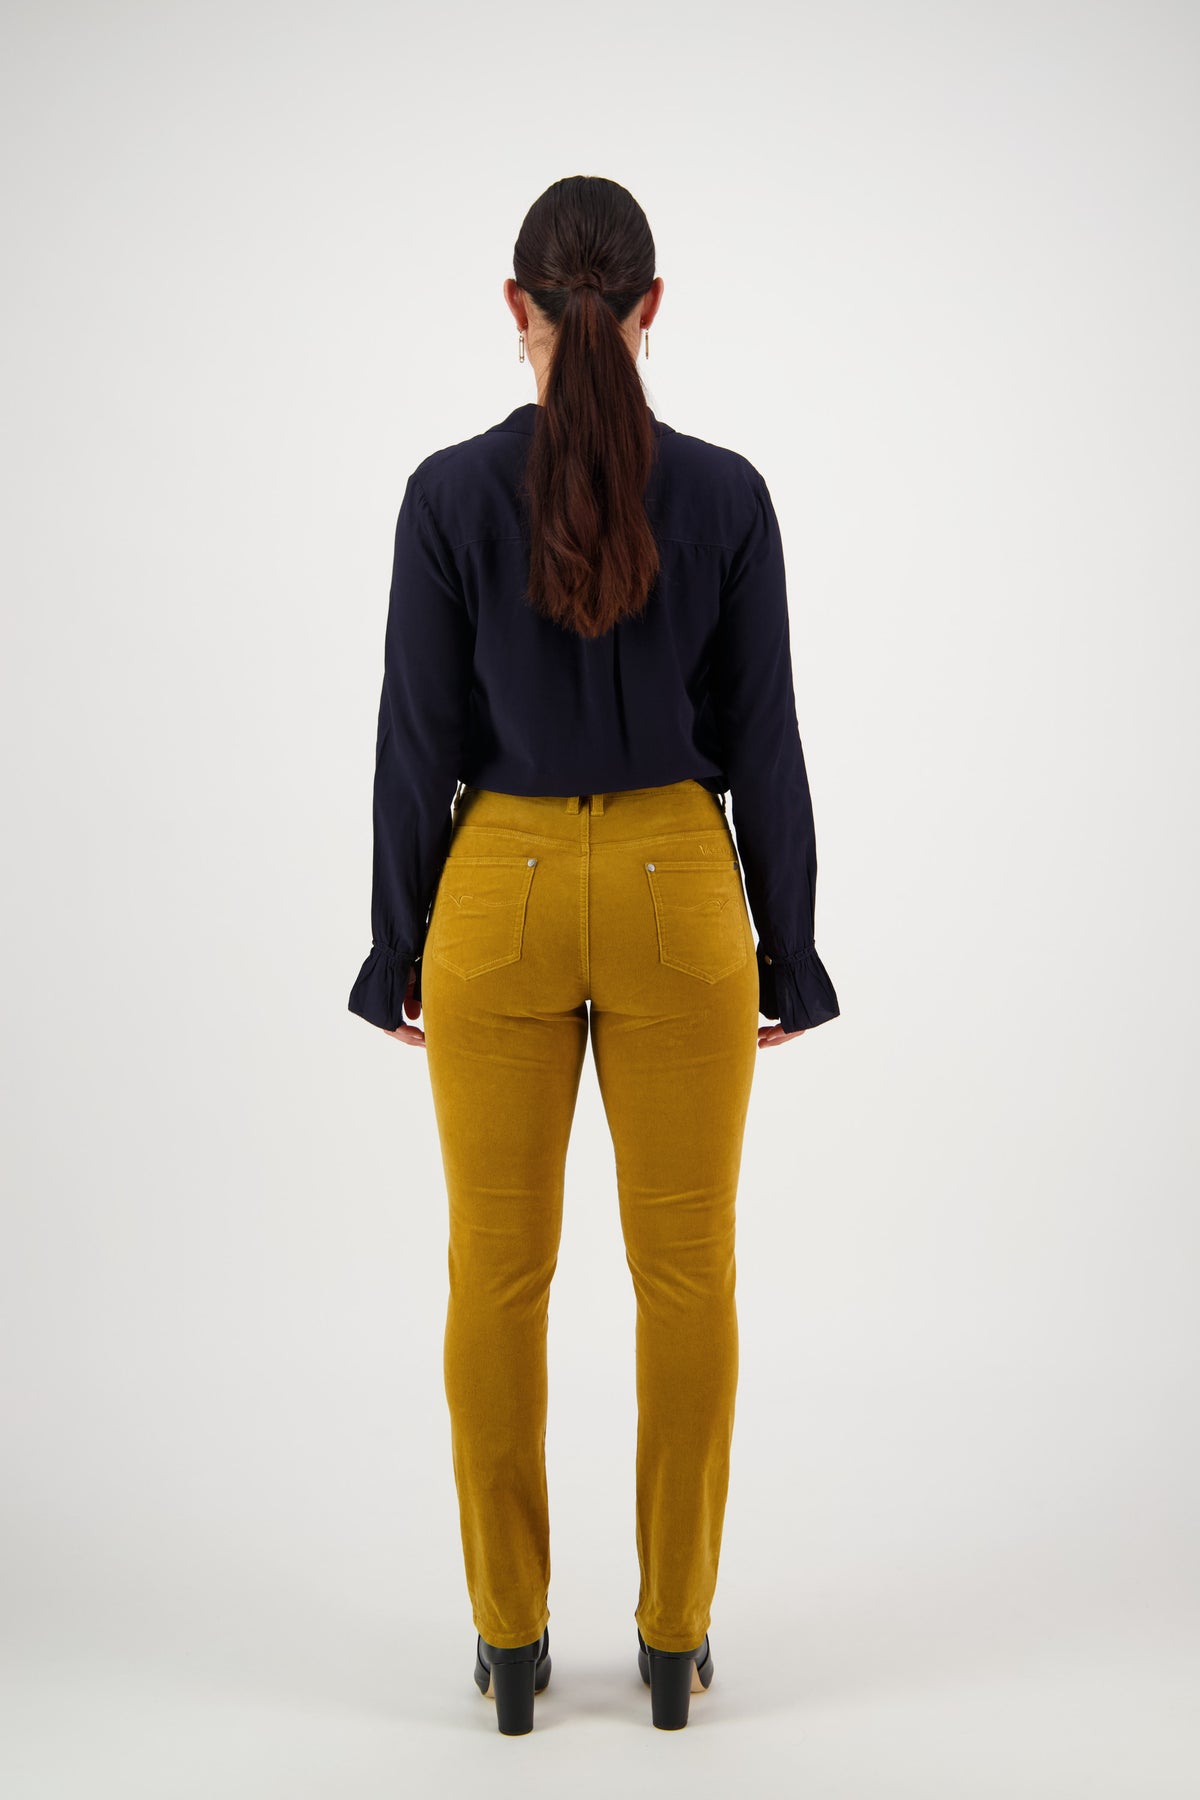 Vassalli - Jean Style Narrow Leg Cord Pant - Mustard